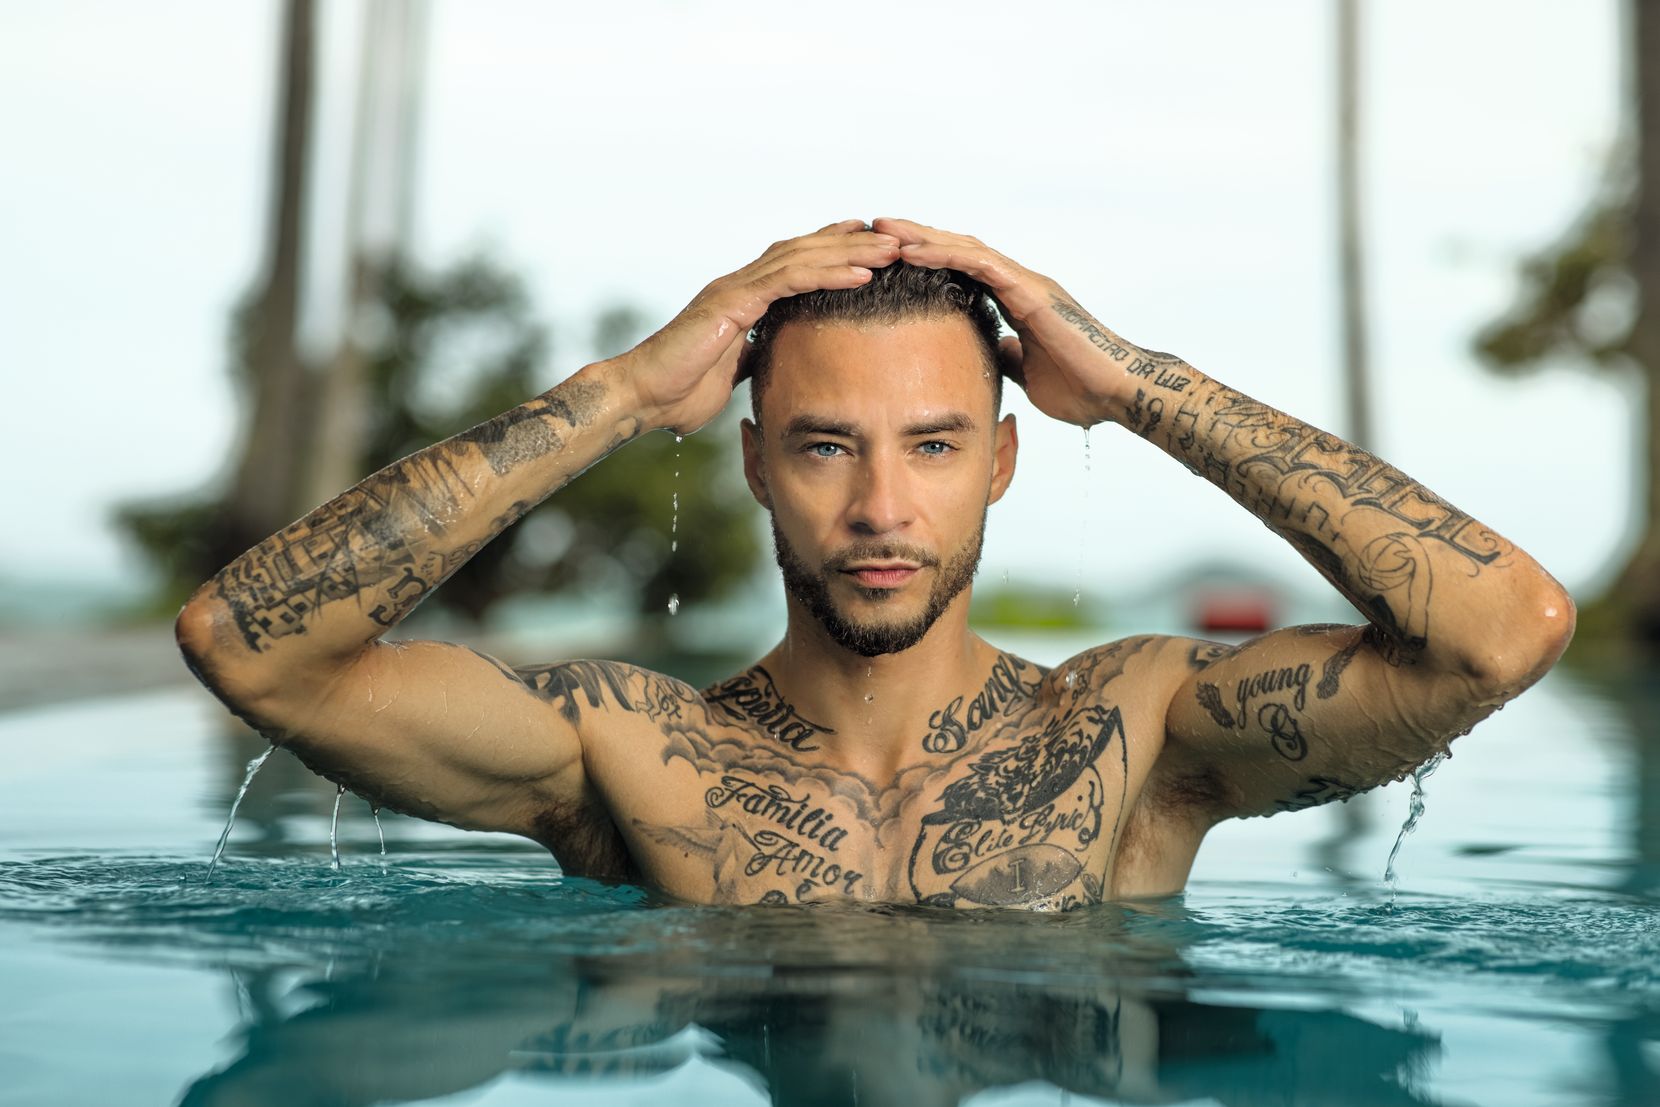 Der neue Bachelor Fabrizio Behrens sieht aus, wie Bachelors so aussehen: Tattoos, Muskeln, Dreitagebart.